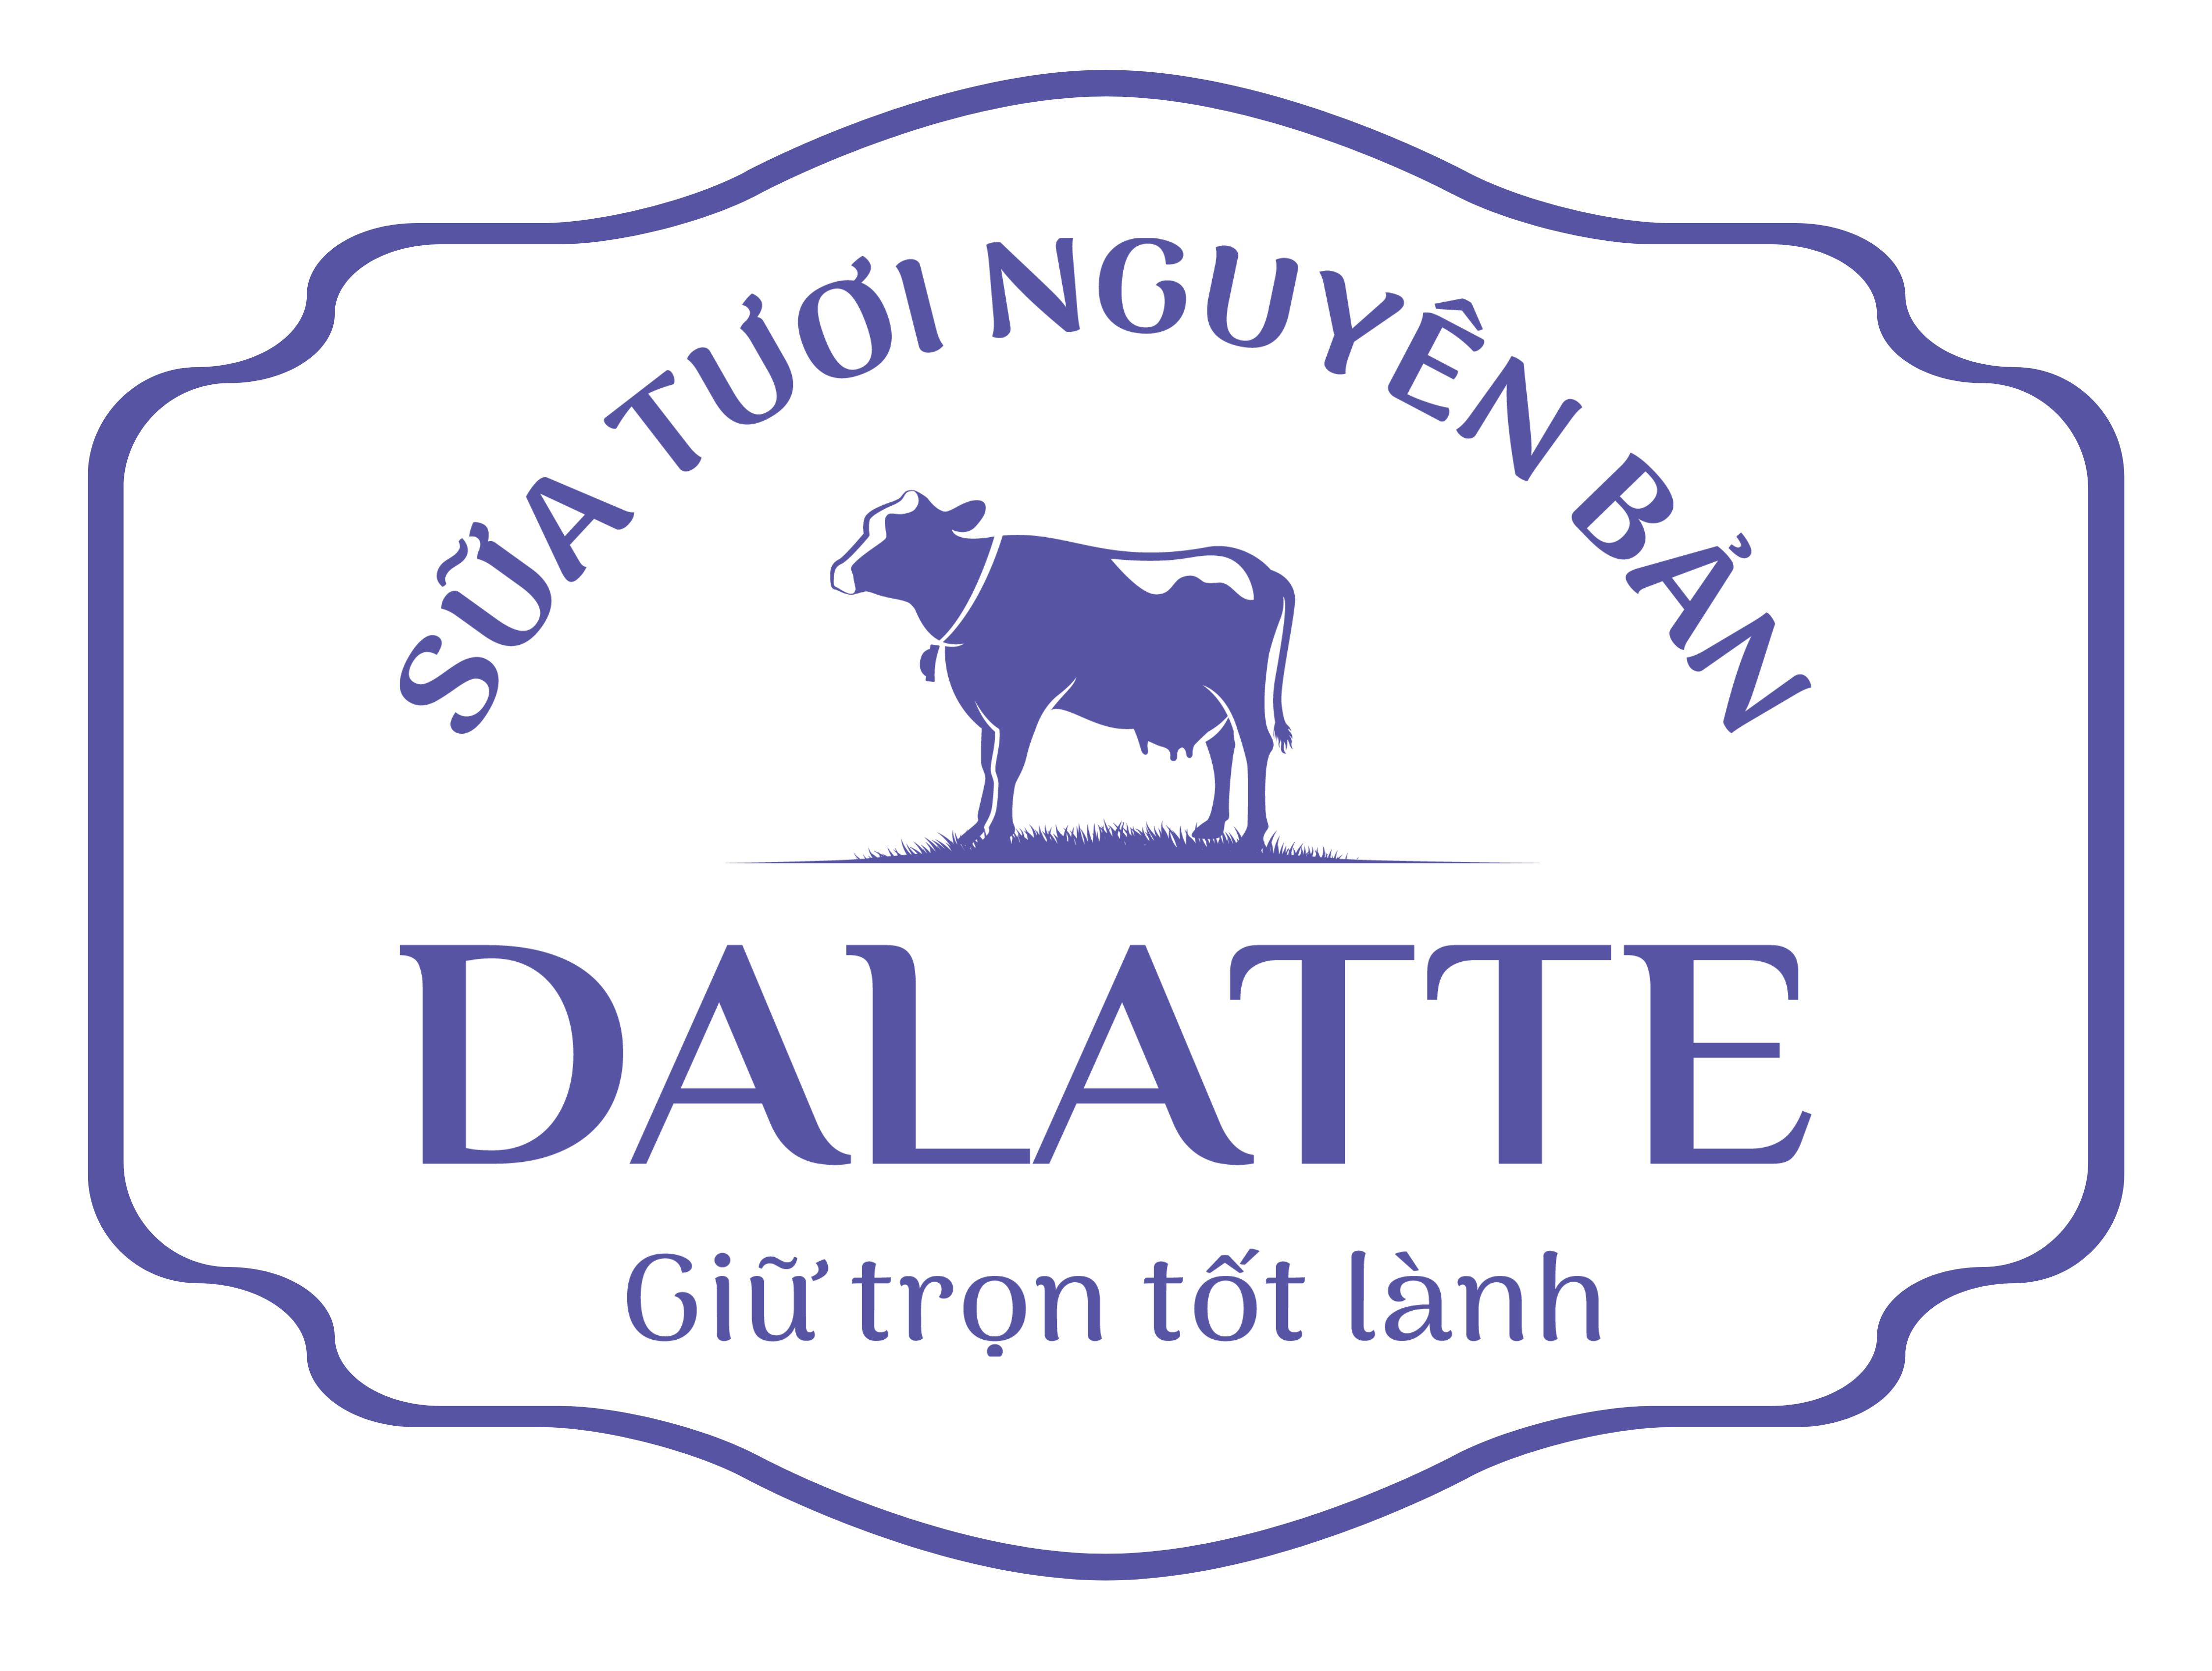 Dalatte